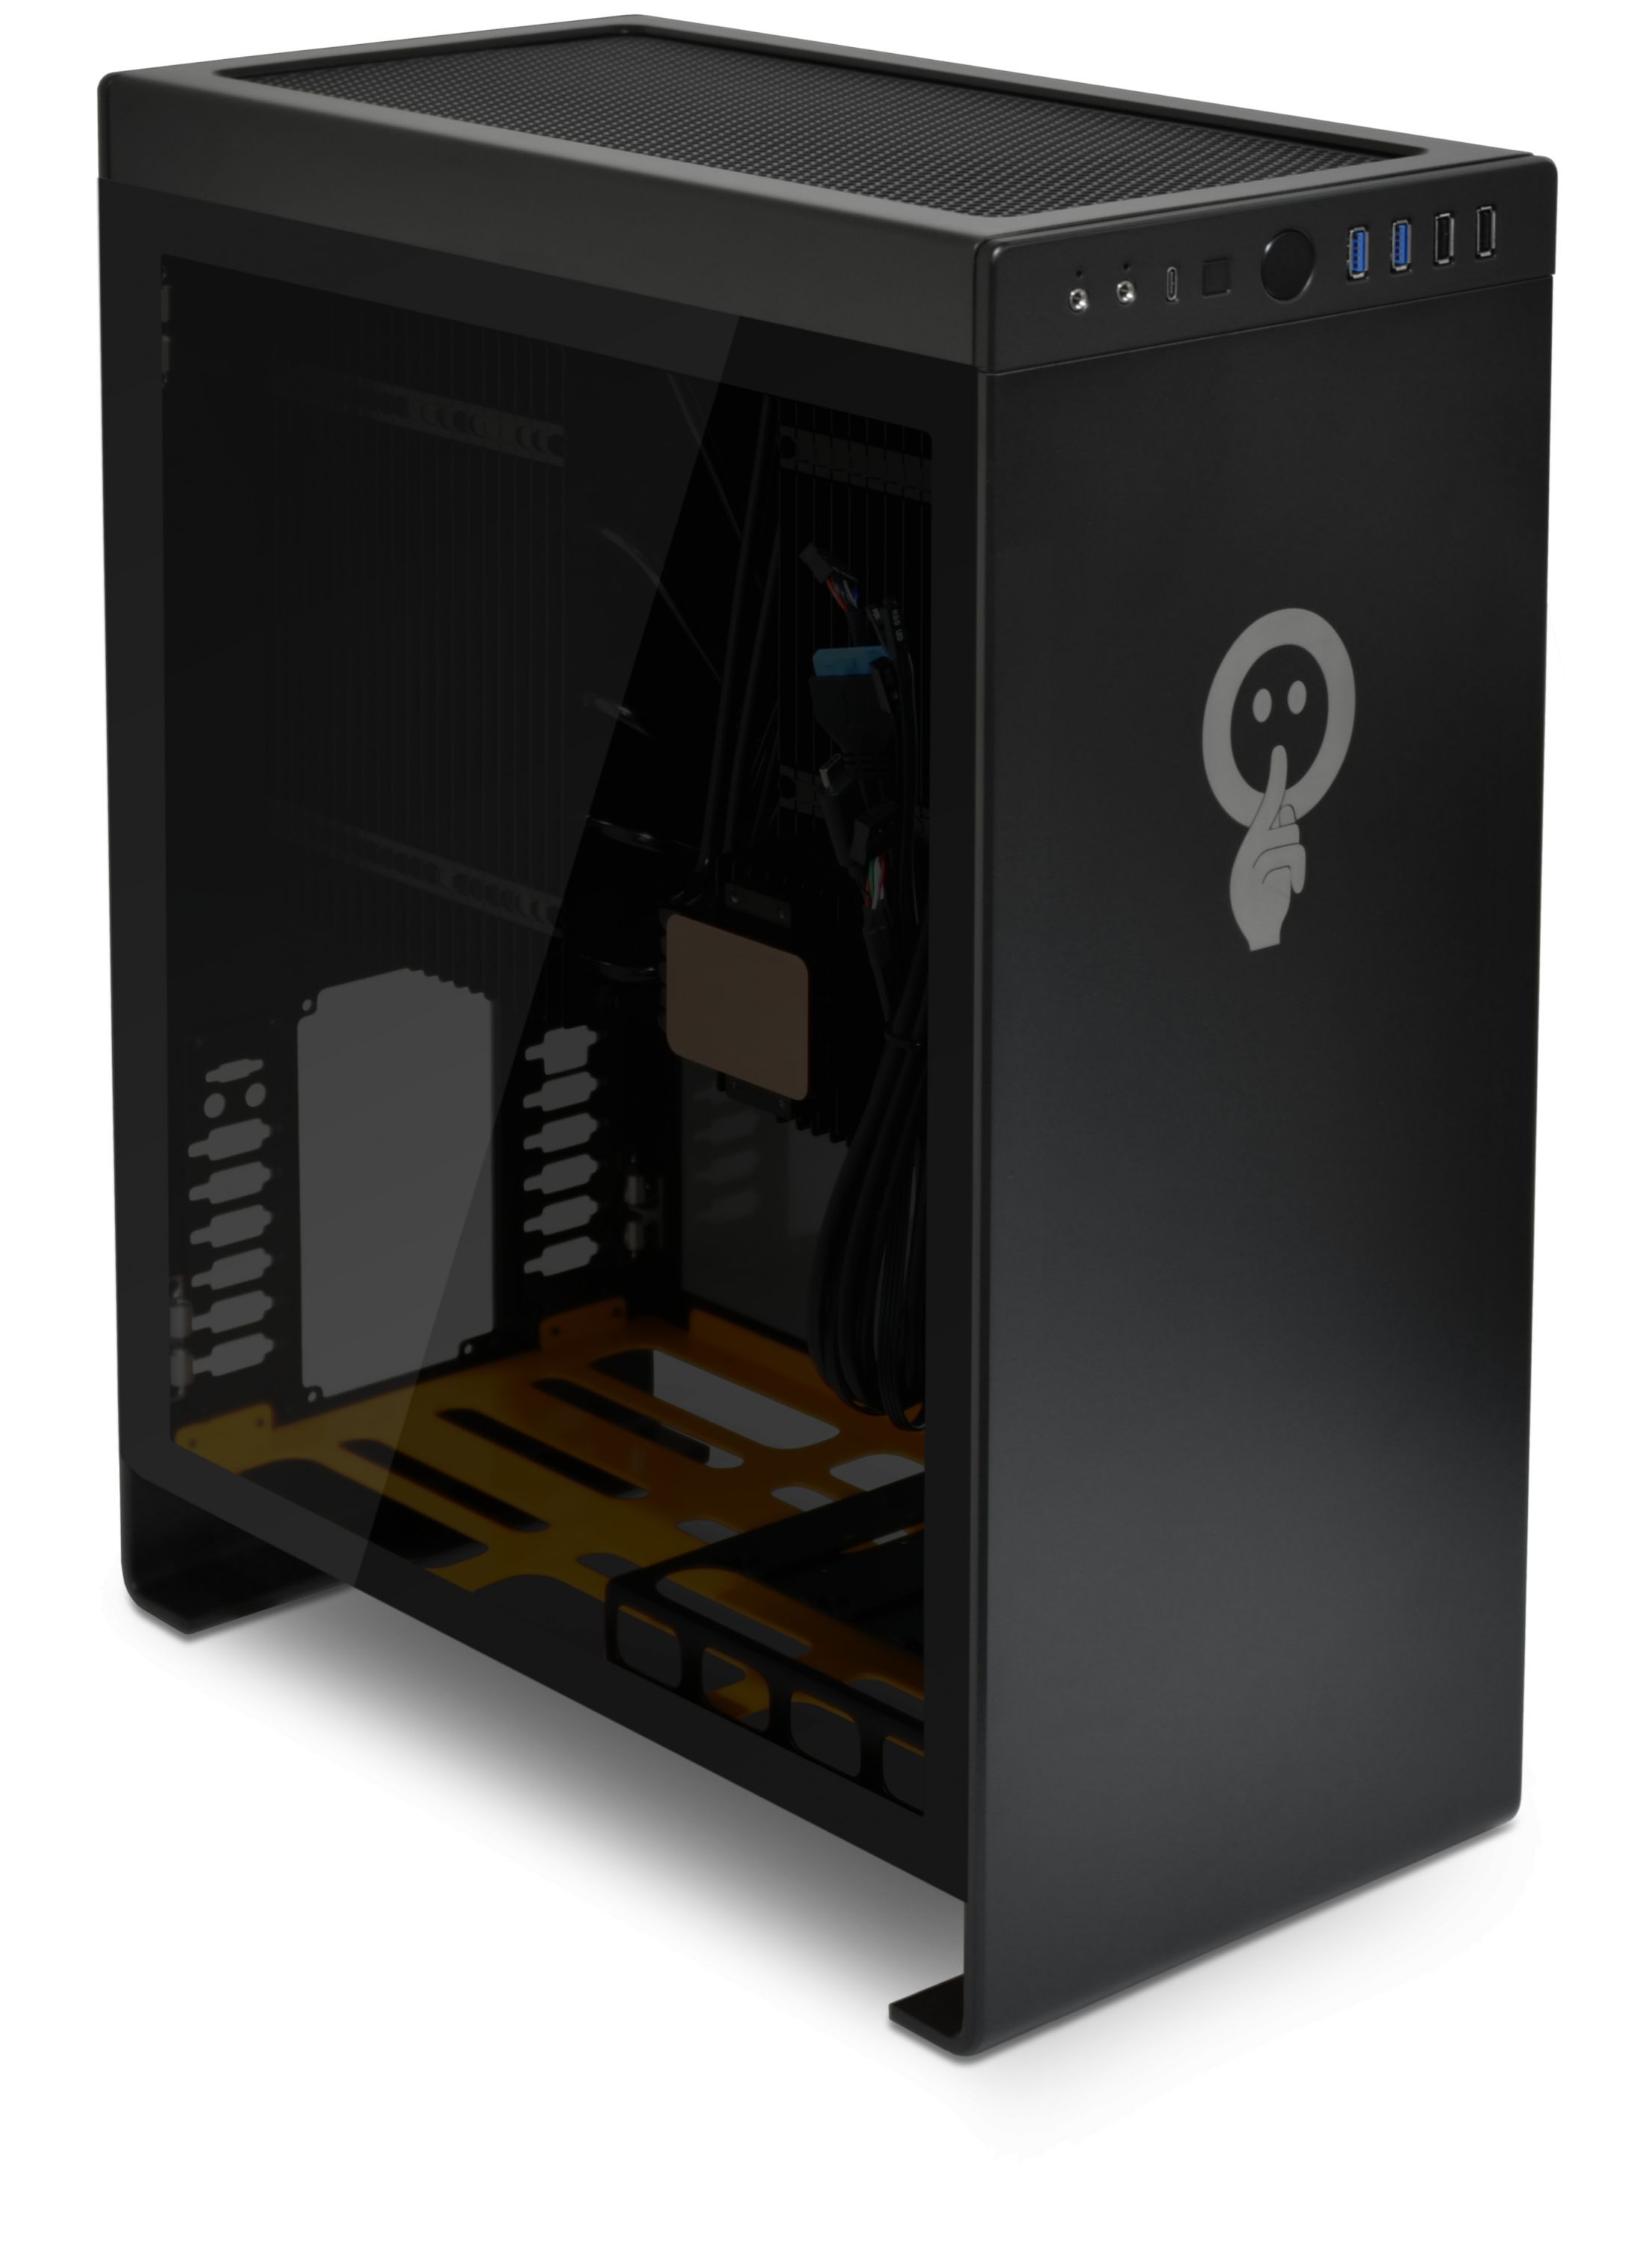 Studio Pc - Conheça o PC GAMER BEAST uma máquina top para